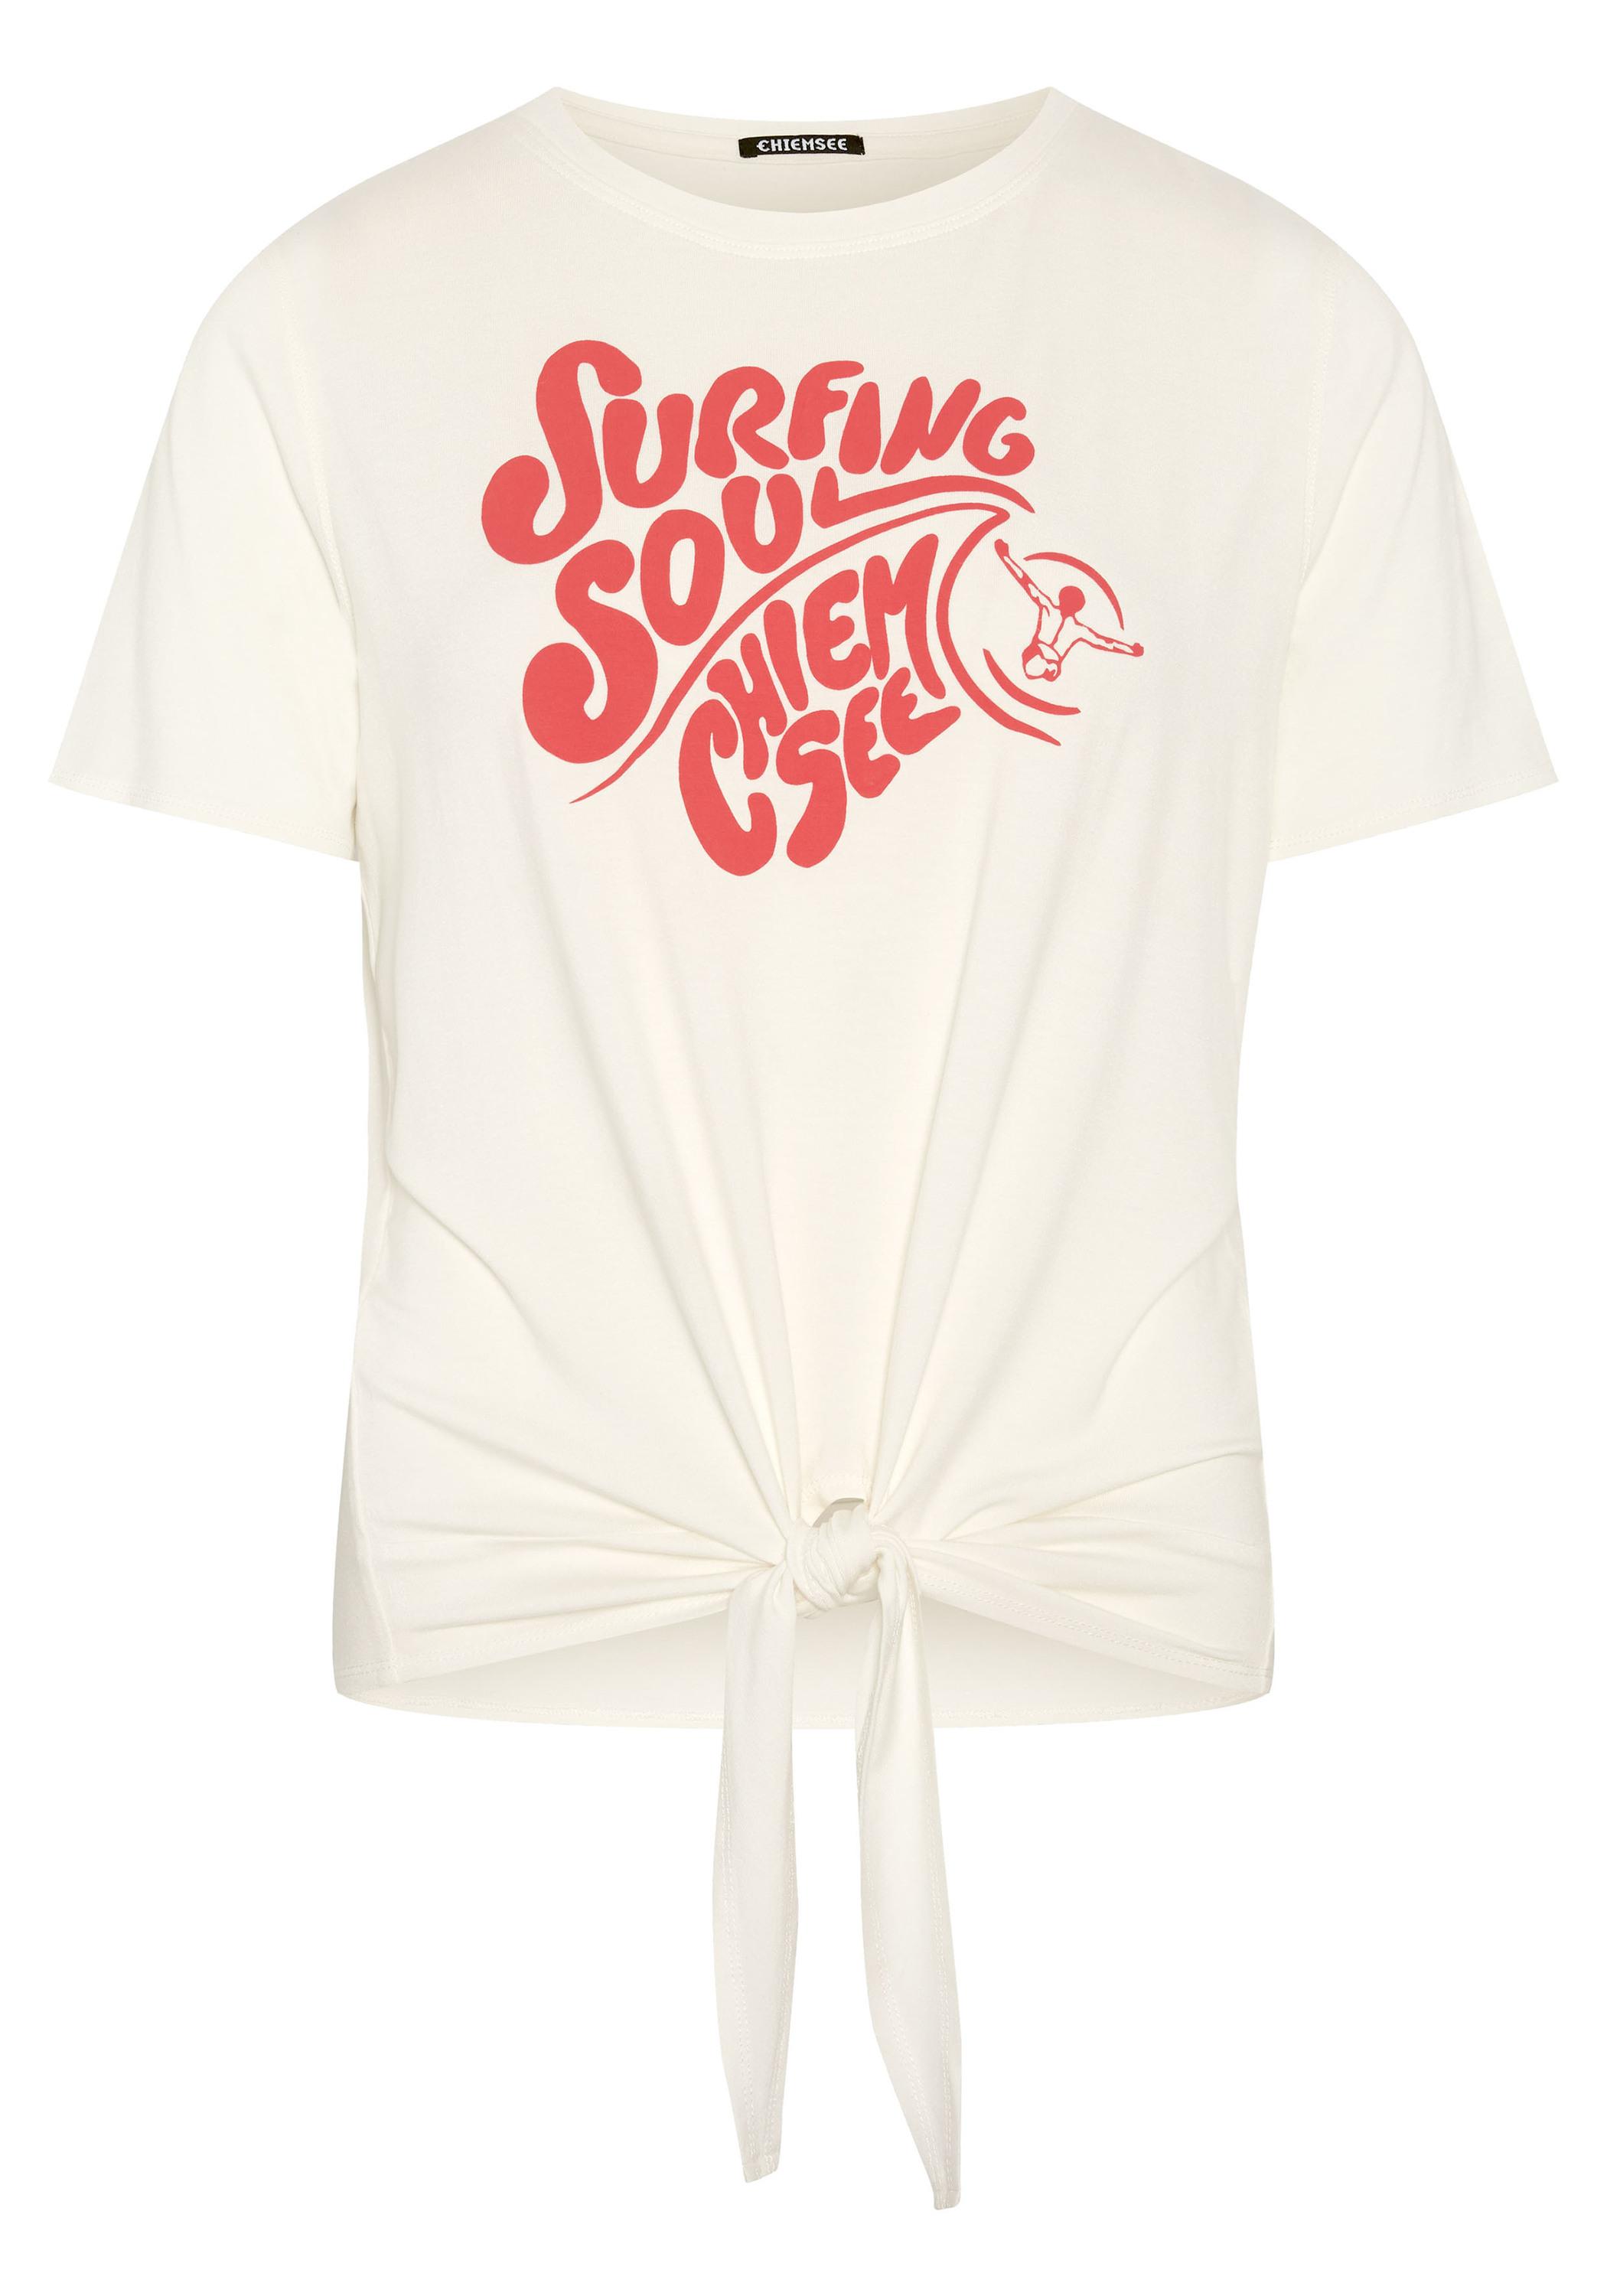 von White kaufen T-Shirt im SportScheck Chiemsee Star T-Shirt Damen 11-4202 gecropptes Online Shop